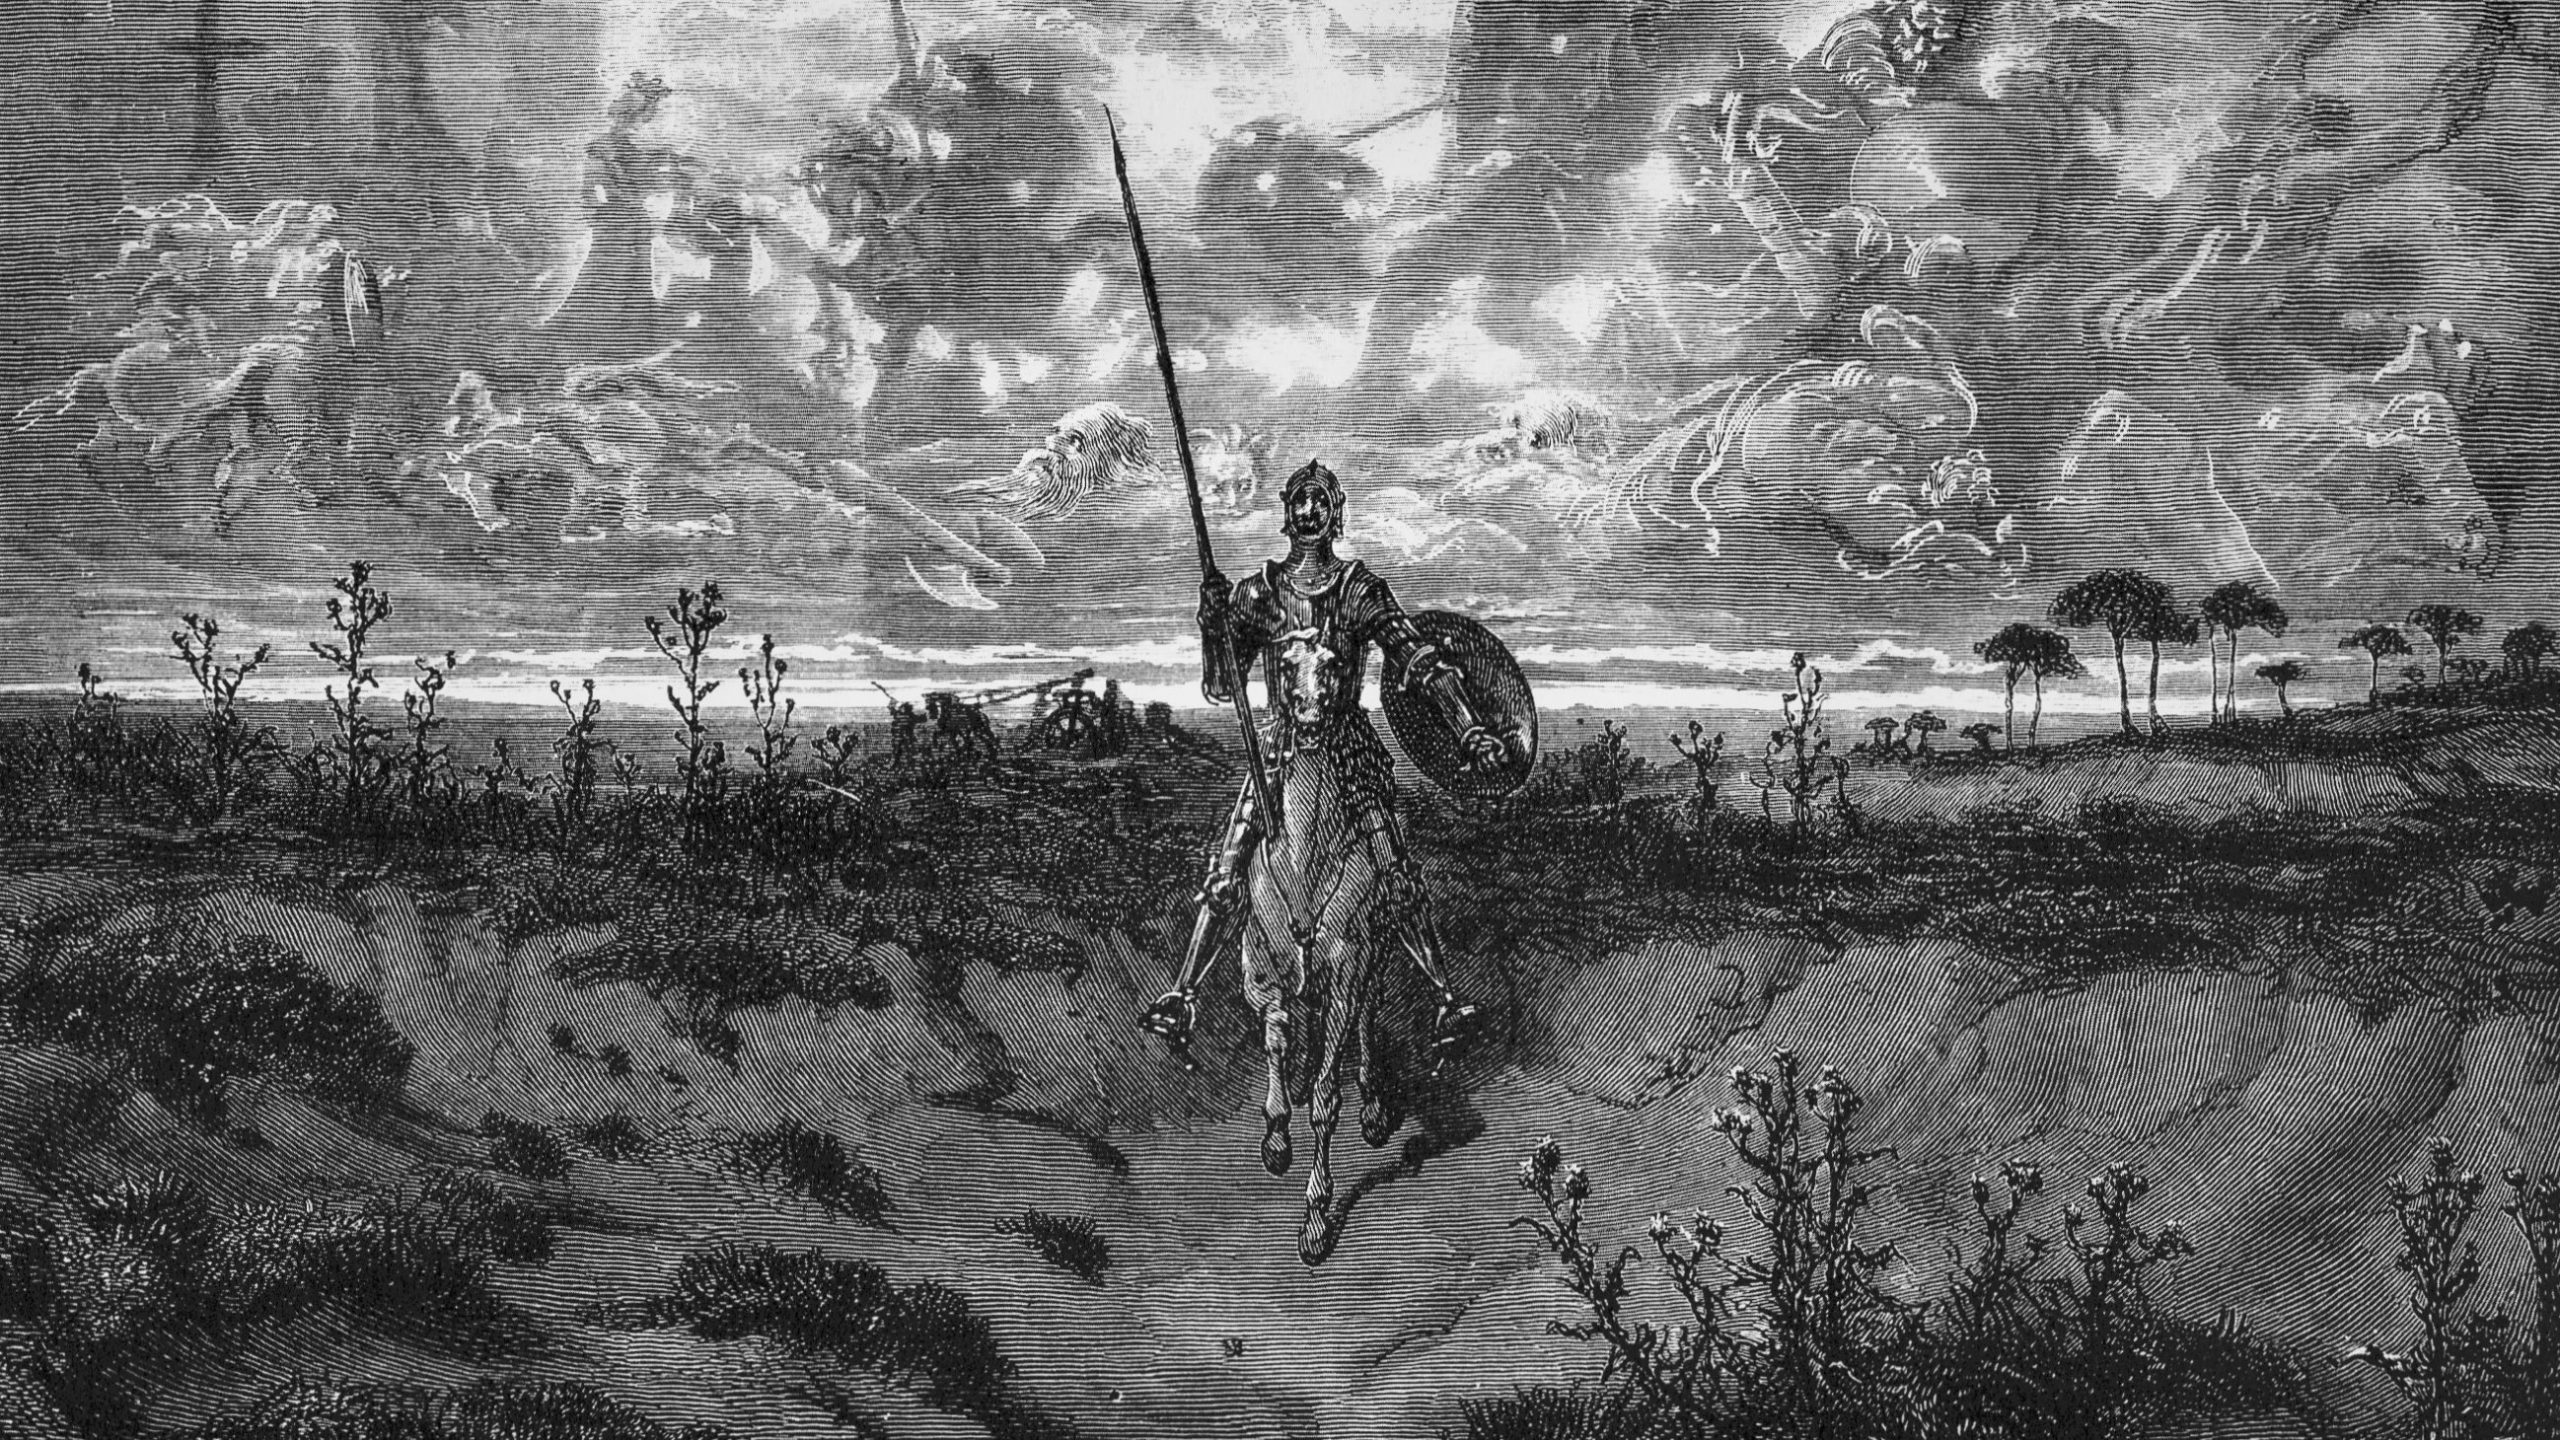 Don Chisciotte a cavallo. Si vedono sullo sfondo nuvoloso immagini mitiche di combattimenti e cavalieri